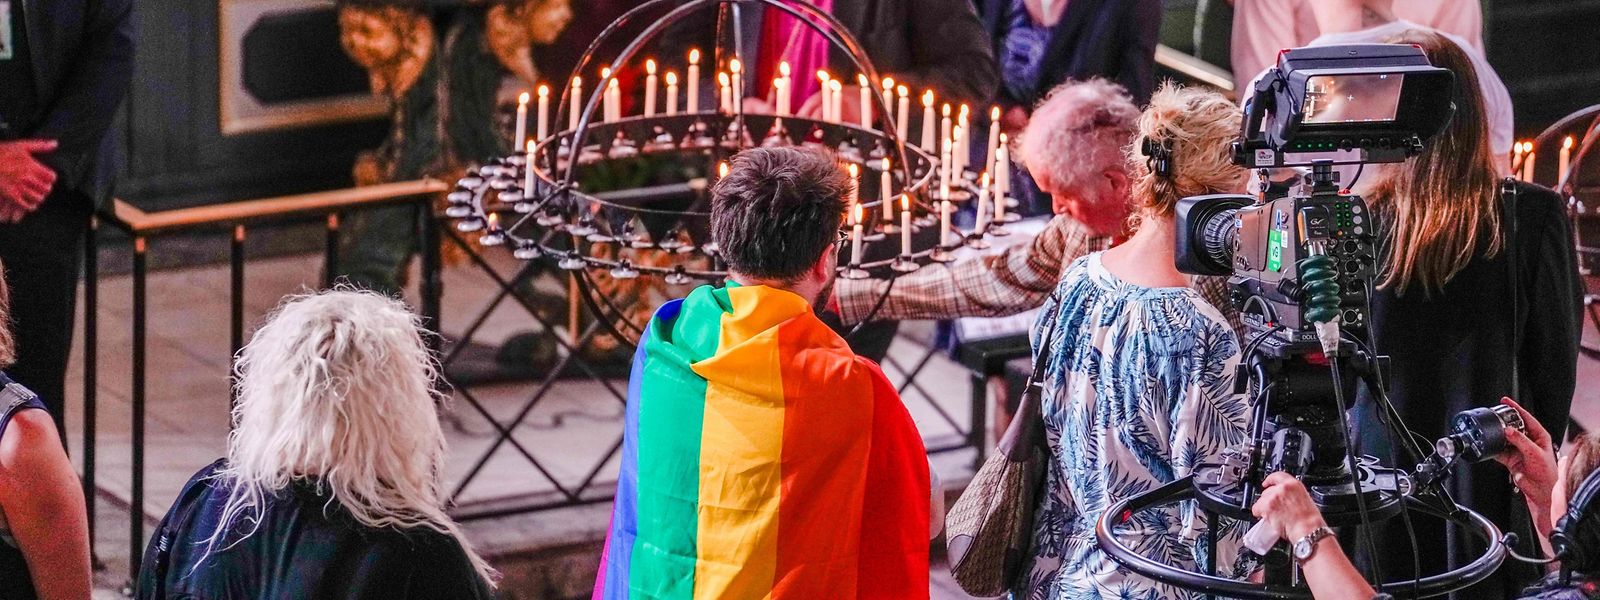 Des personnes en deuil allument des bougies lors d'un service de deuil dans la cathédrale d'Oslo au lendemain de la fusillade.